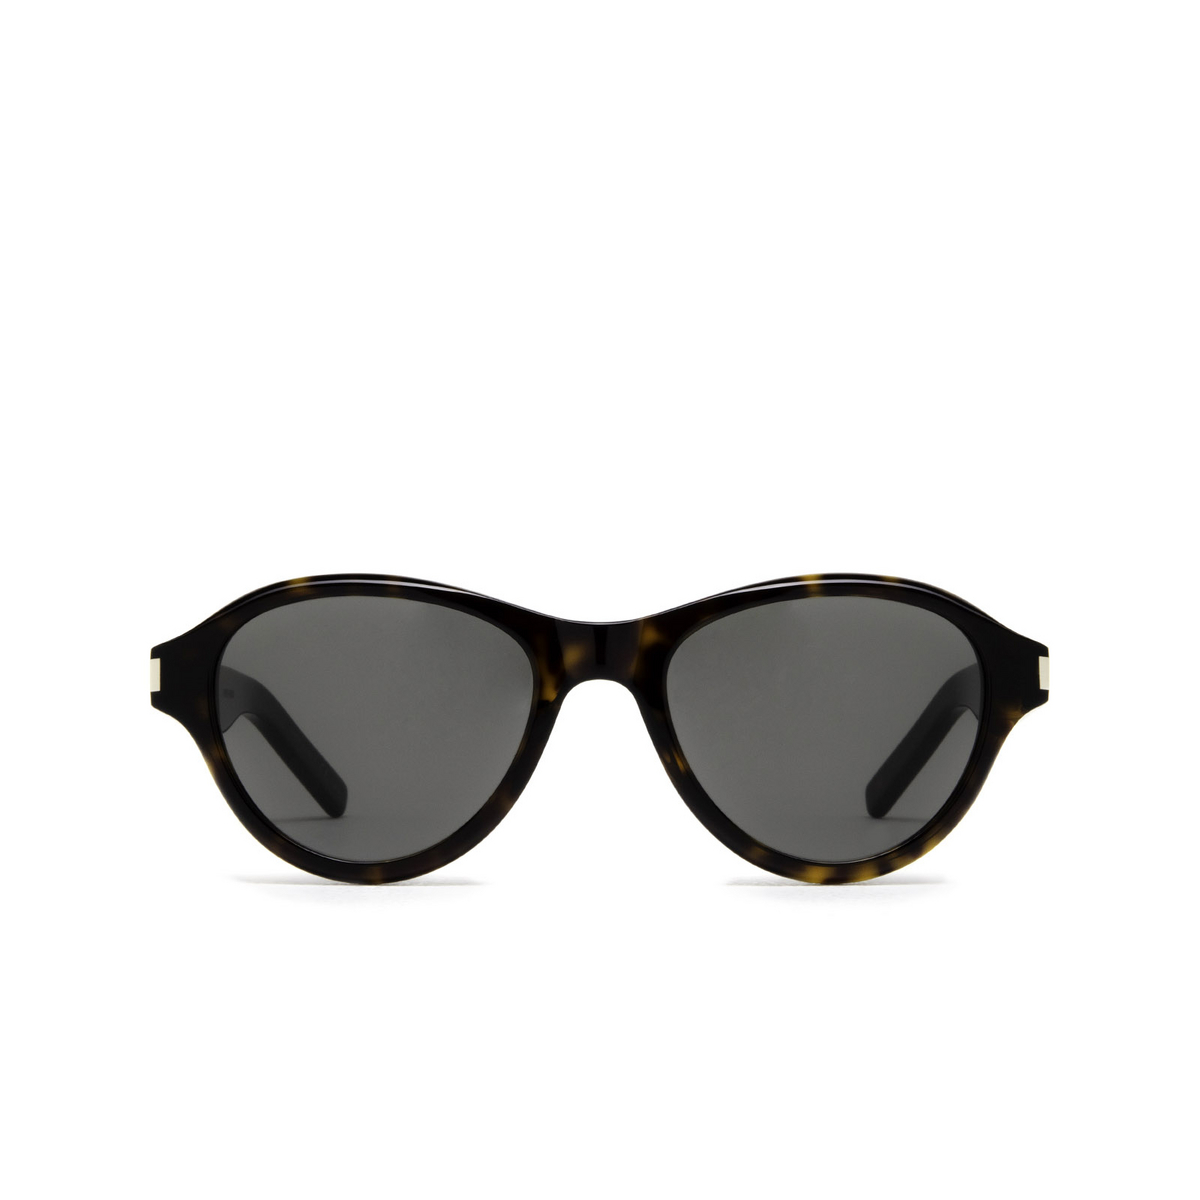 Saint Laurent® Oval Sunglasses: SL 520 SUNSET color Havana 002 - front view.